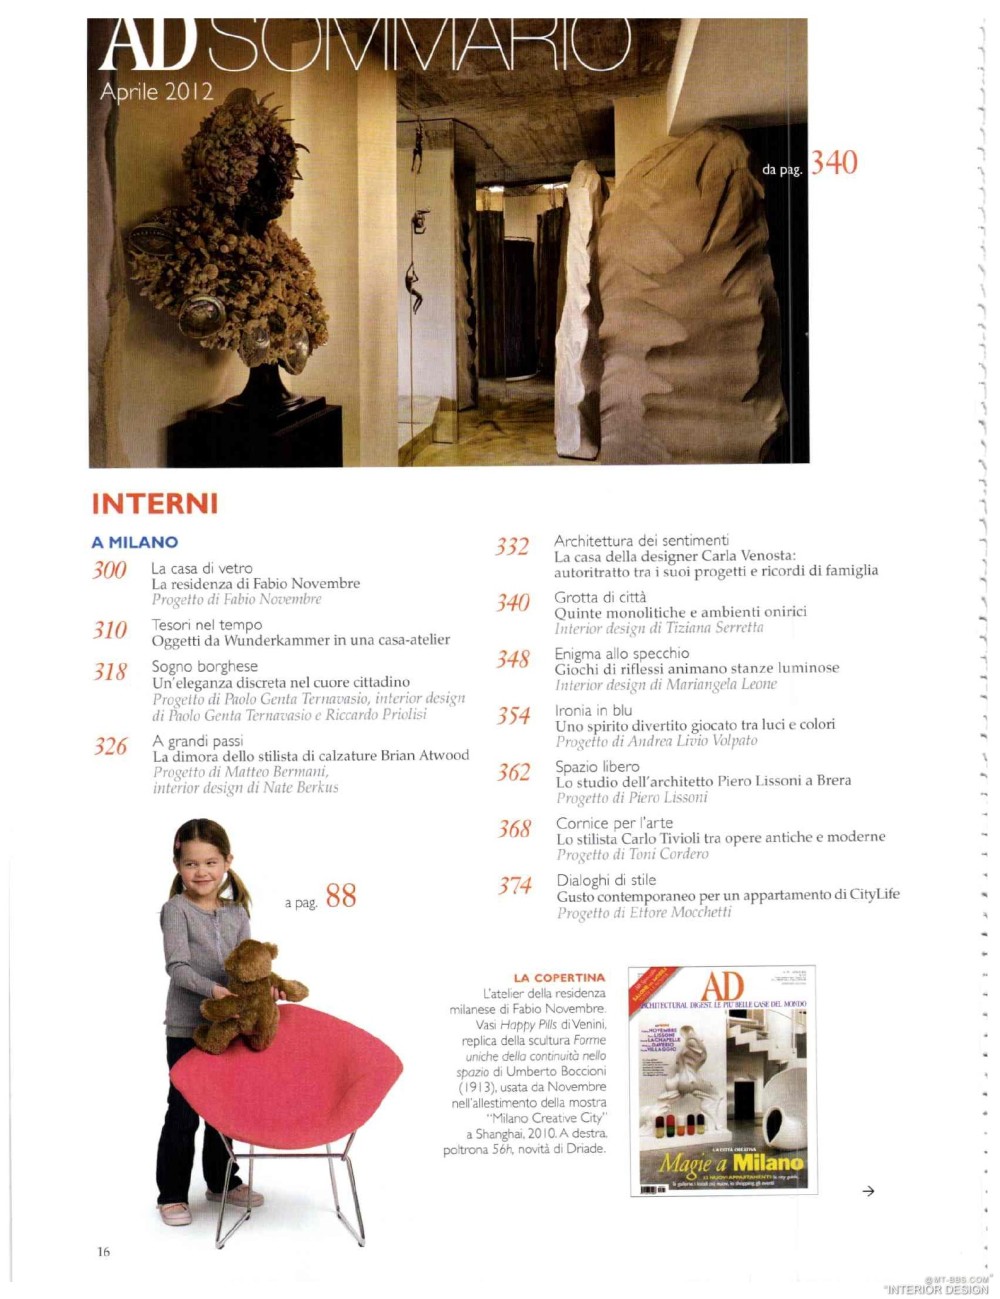 意大利AD 杂志 2012年全年JPG高清版本 全免（上传完毕）_0018.jpg